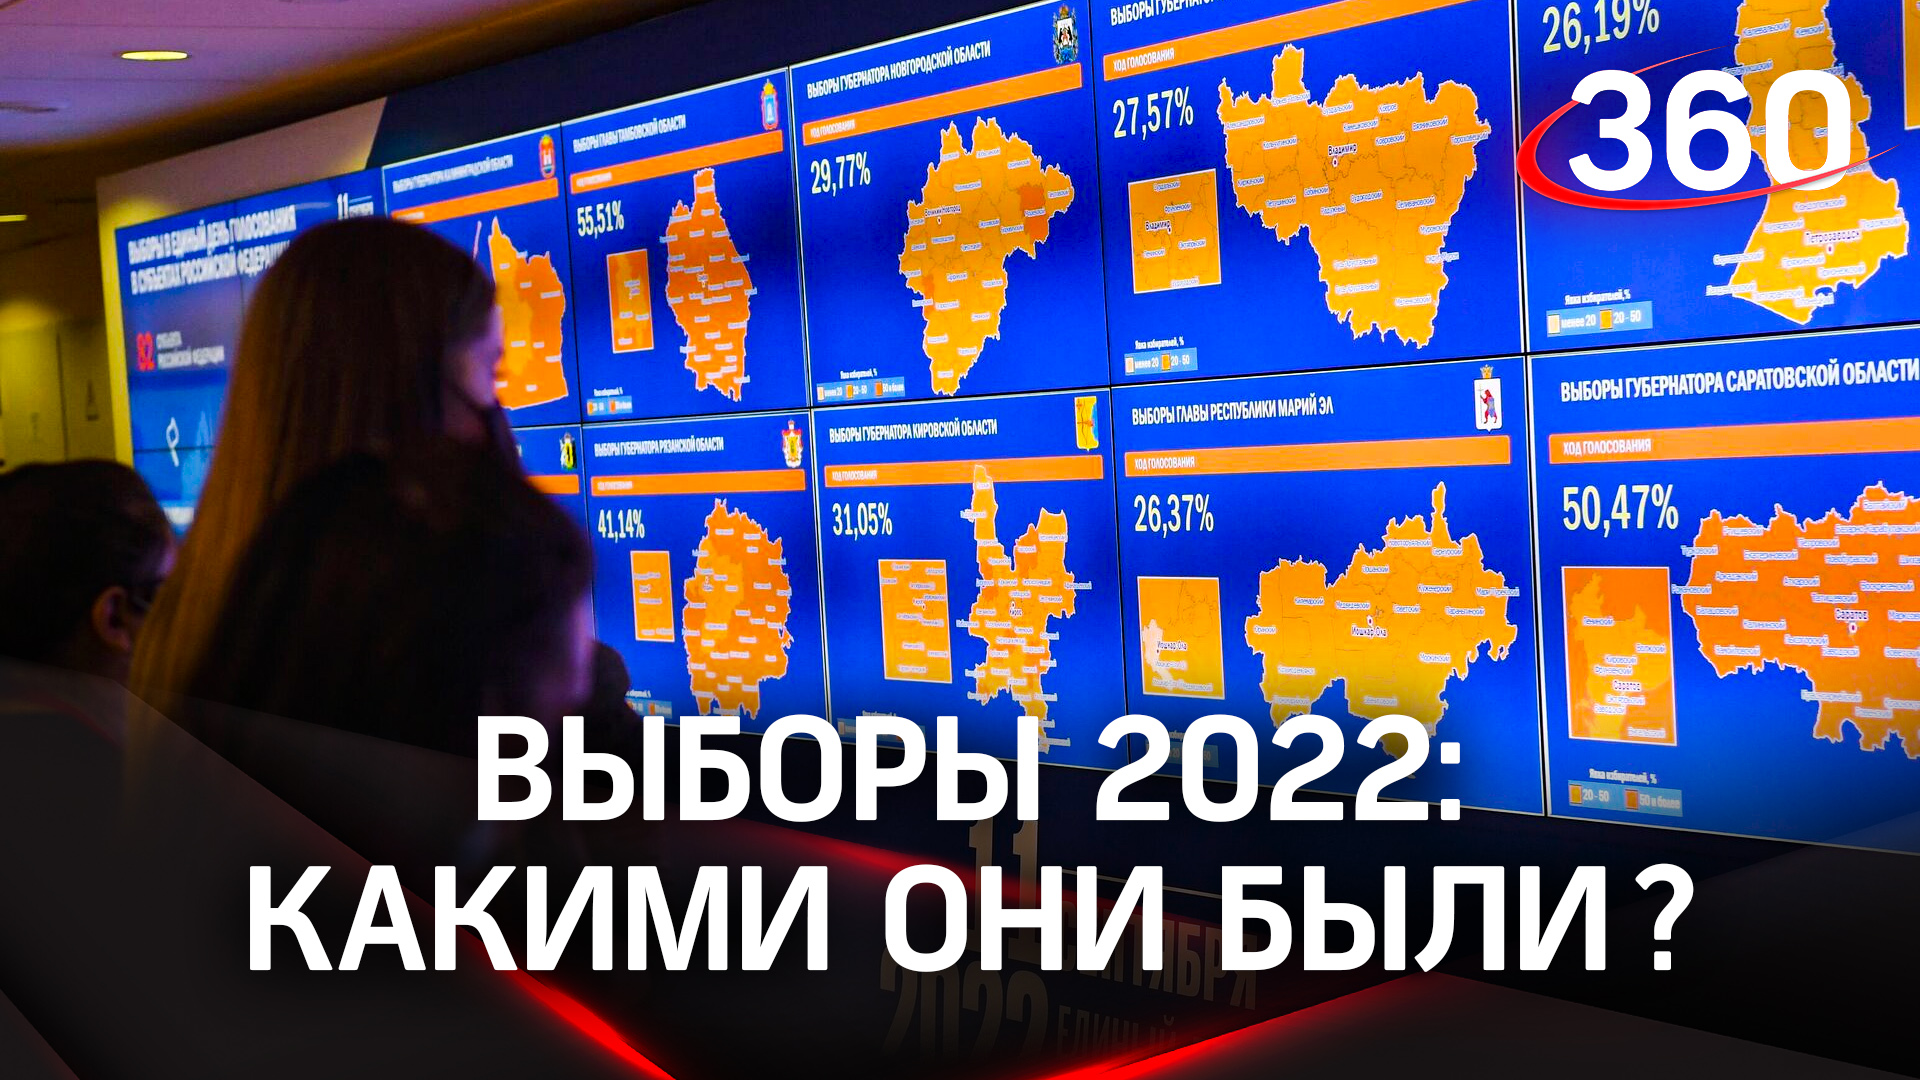 Выборы 2022. Чем отличились в этот раз?